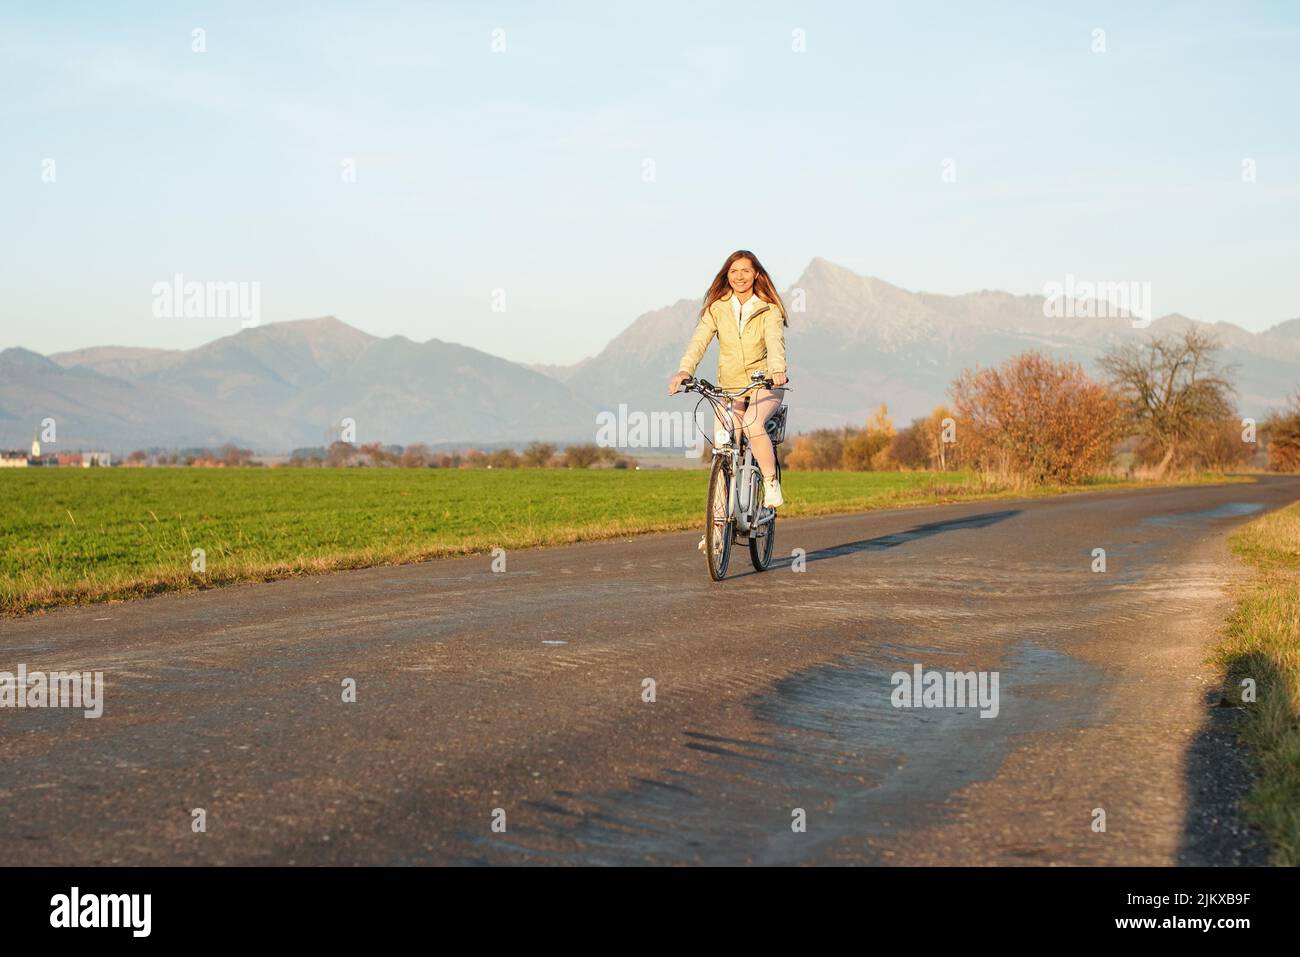 Junge Frau in Jacke fährt mit dem Fahrrad über die Landstraße, die Nachmittagssonne scheint am Berg Krivan - slowakisches Symbol - Hintergrund Stockfoto